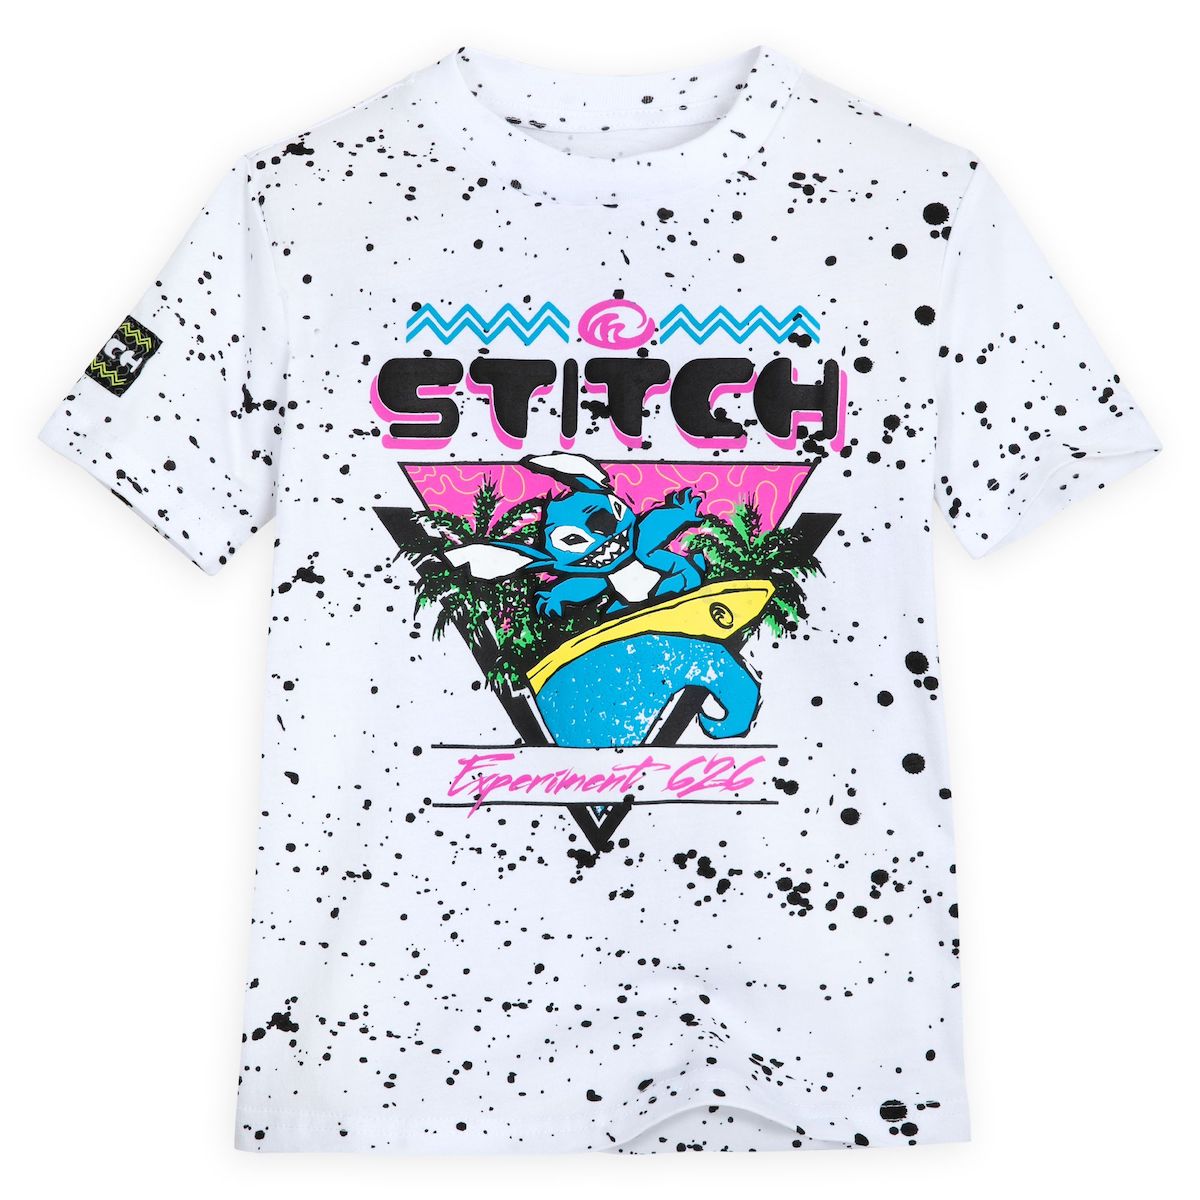 Happy Stitch Day 2023! Celebrate 6/26 with new Stitch merch